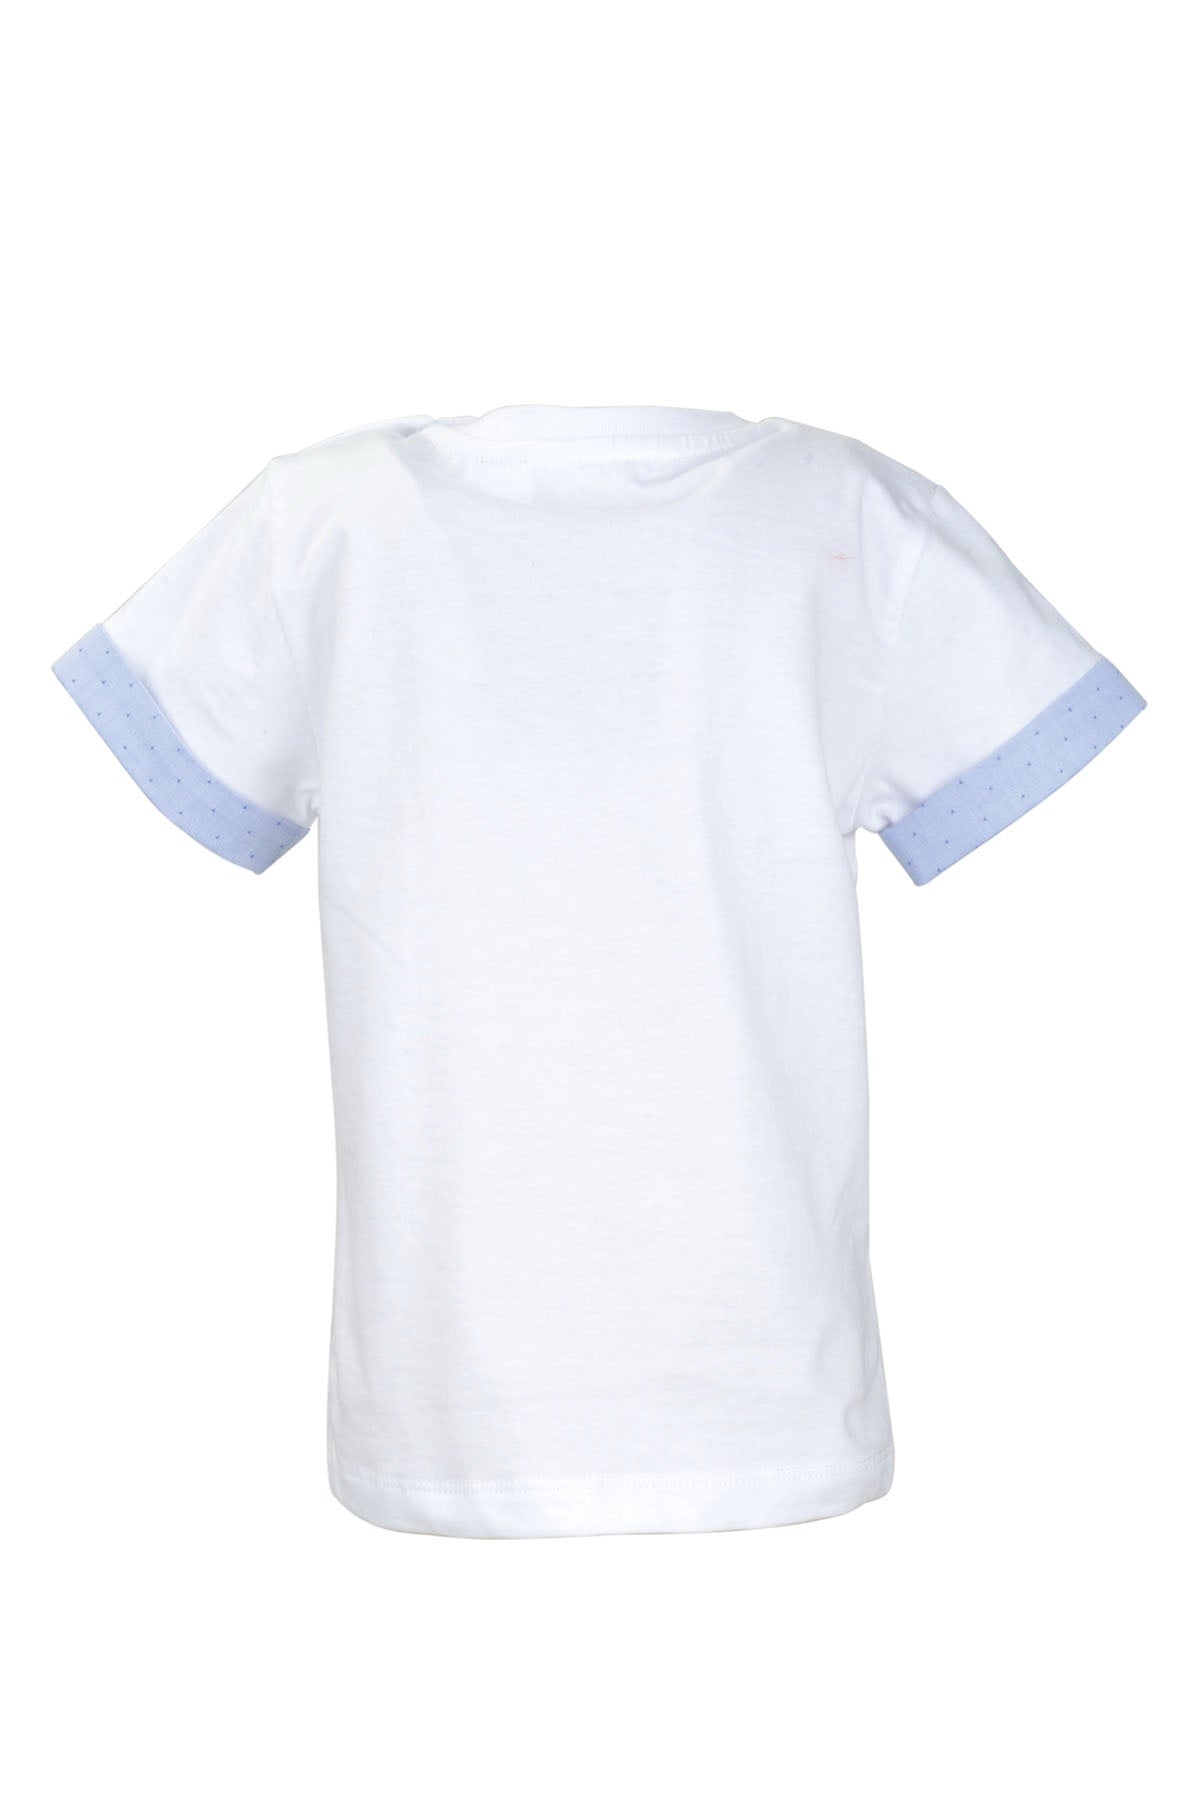 Erkek Bebek Beyaz Cepli Kol Parçalı T-Shirt (9ay-4yaş)-2